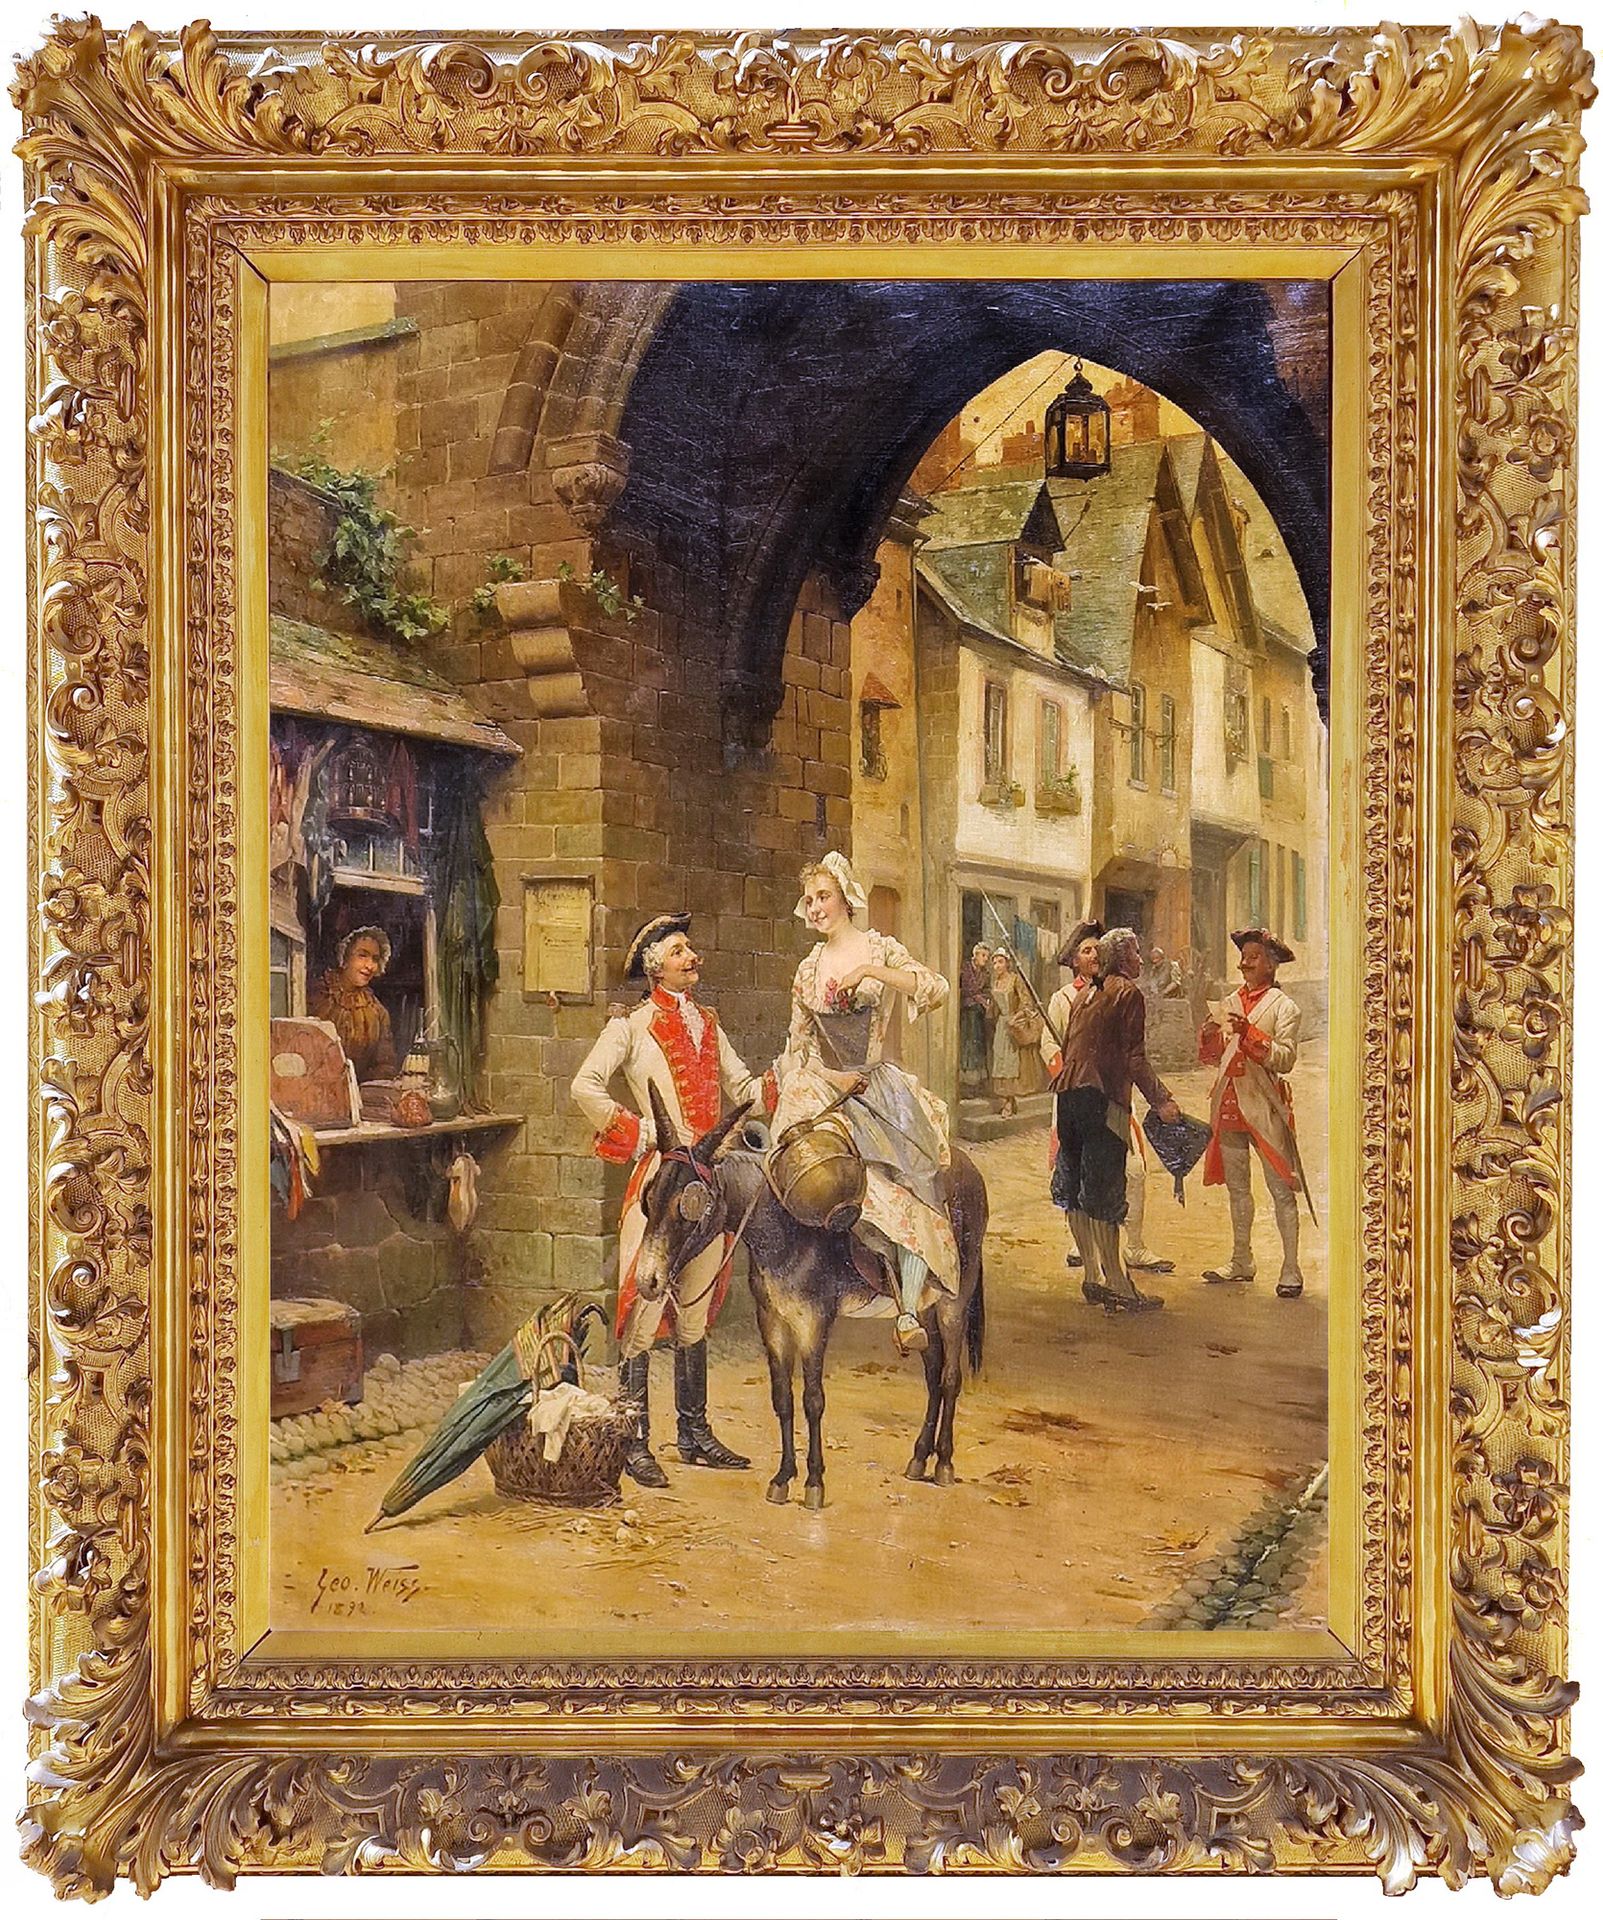 EMILLE GEORGE dit "GEO" WEISS (1861-1929) Gallant scene in Riquewihr, 1892



Im&hellip;